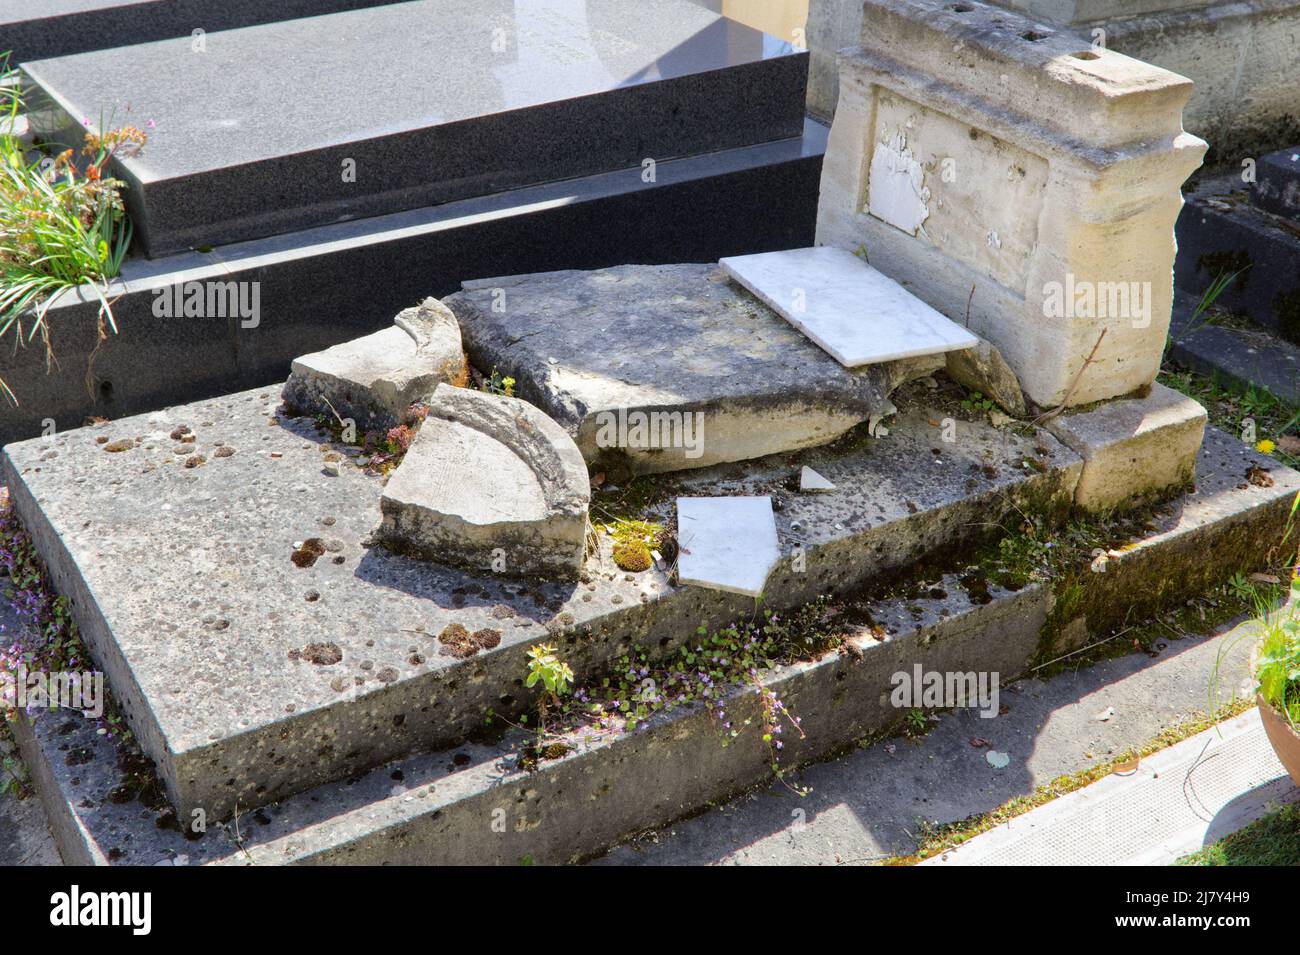 Une action lâche, impitoyable et ignoble - Une tombe vandalisée et violée dans le cimetière Montparnasse - Paris Banque D'Images